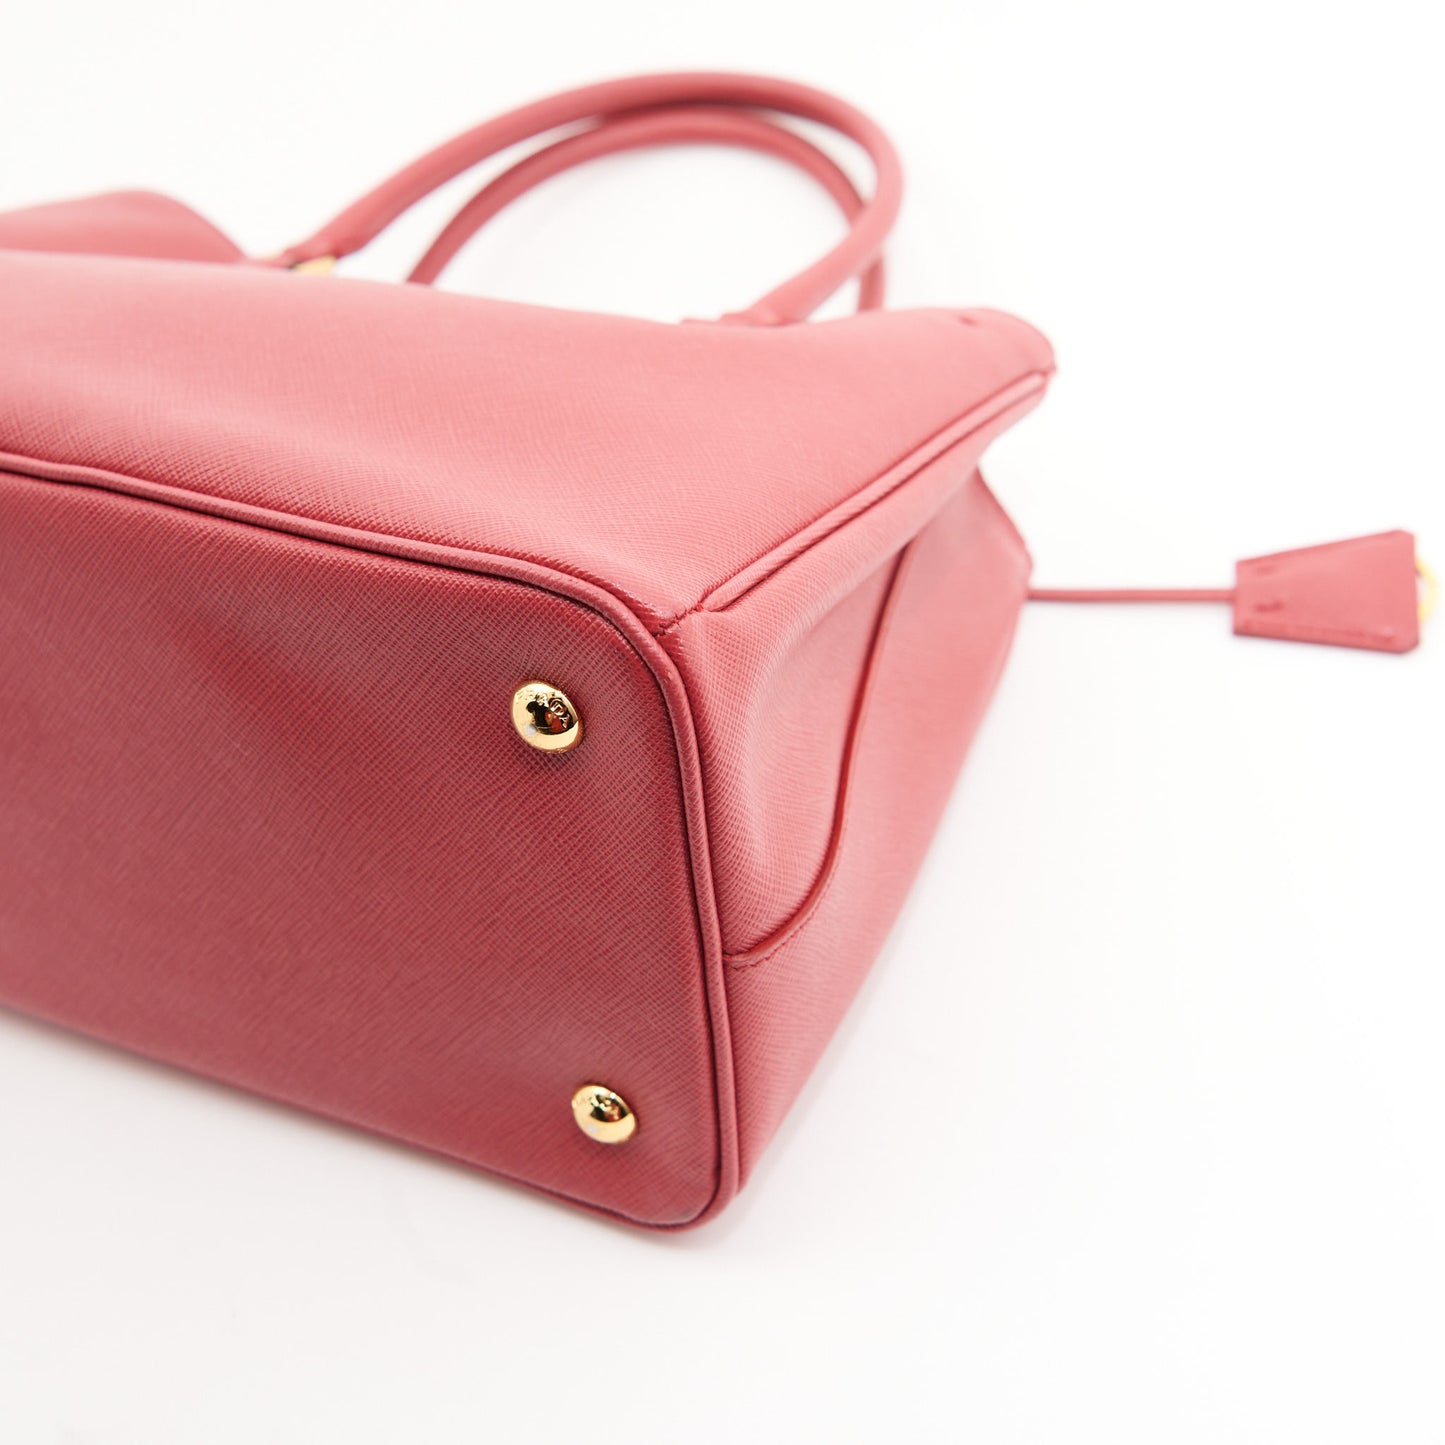 Prada Leather Saffiano Galleria Tote Bag in Red